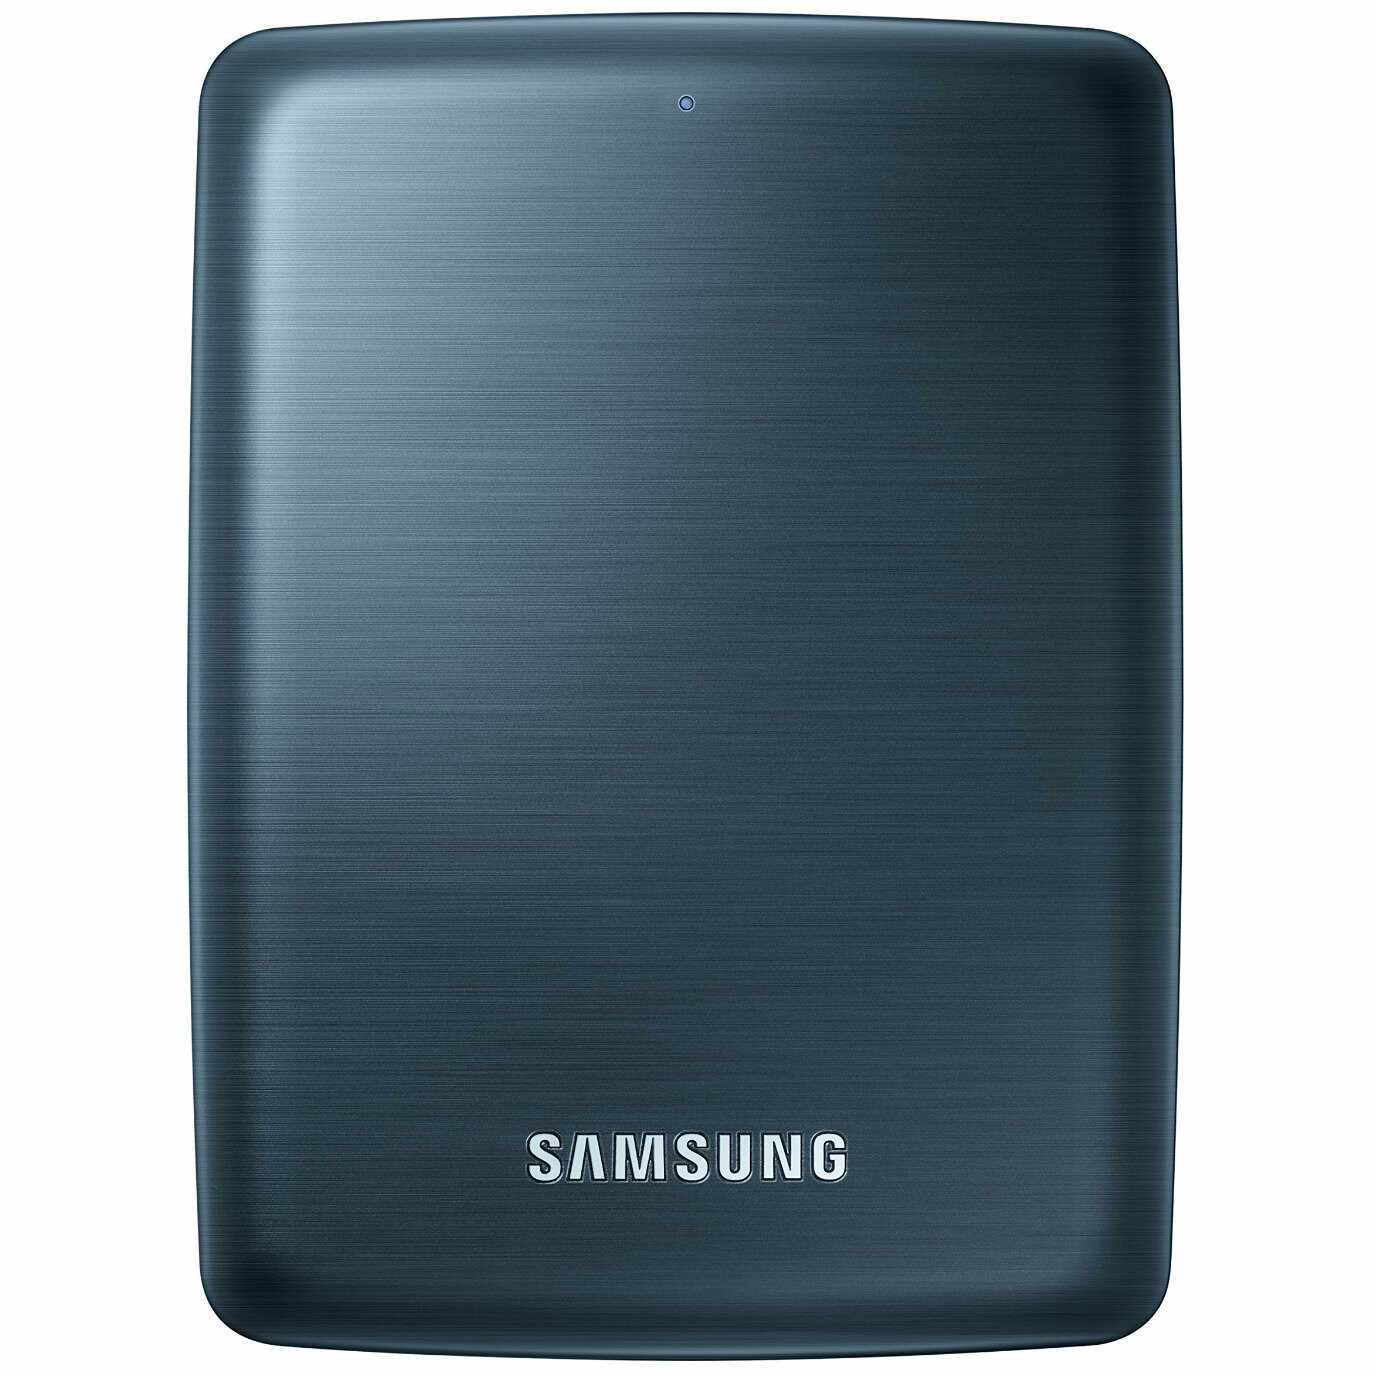 HDD extern Samsung CY-SUC05SH1/XC, 500GB, USB 3.0, Pachet Video Demo